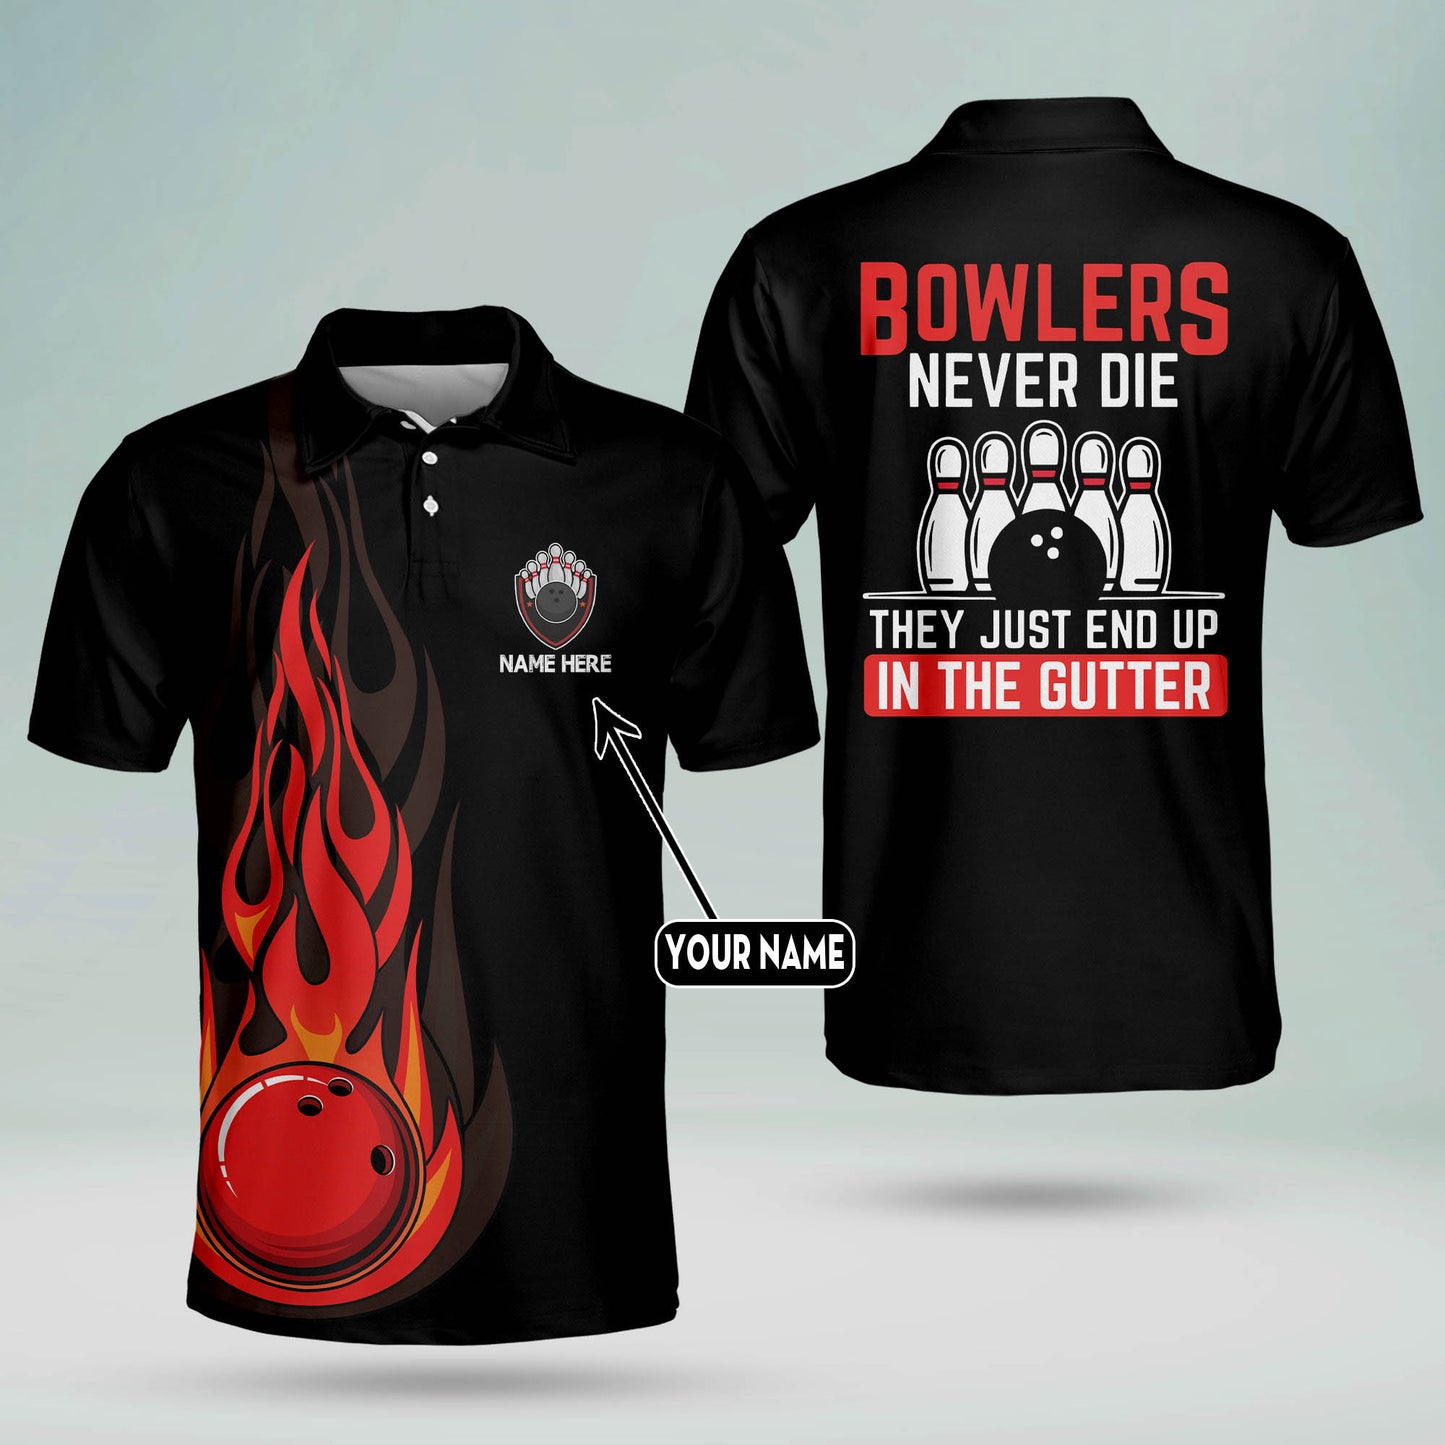 Custom Bowling Shirts For Men - Men's Customize Funny Bowling Shirt - Flame Bowling Team Shirts - American Short Sleeve Bowling Shirts For Men BM0066